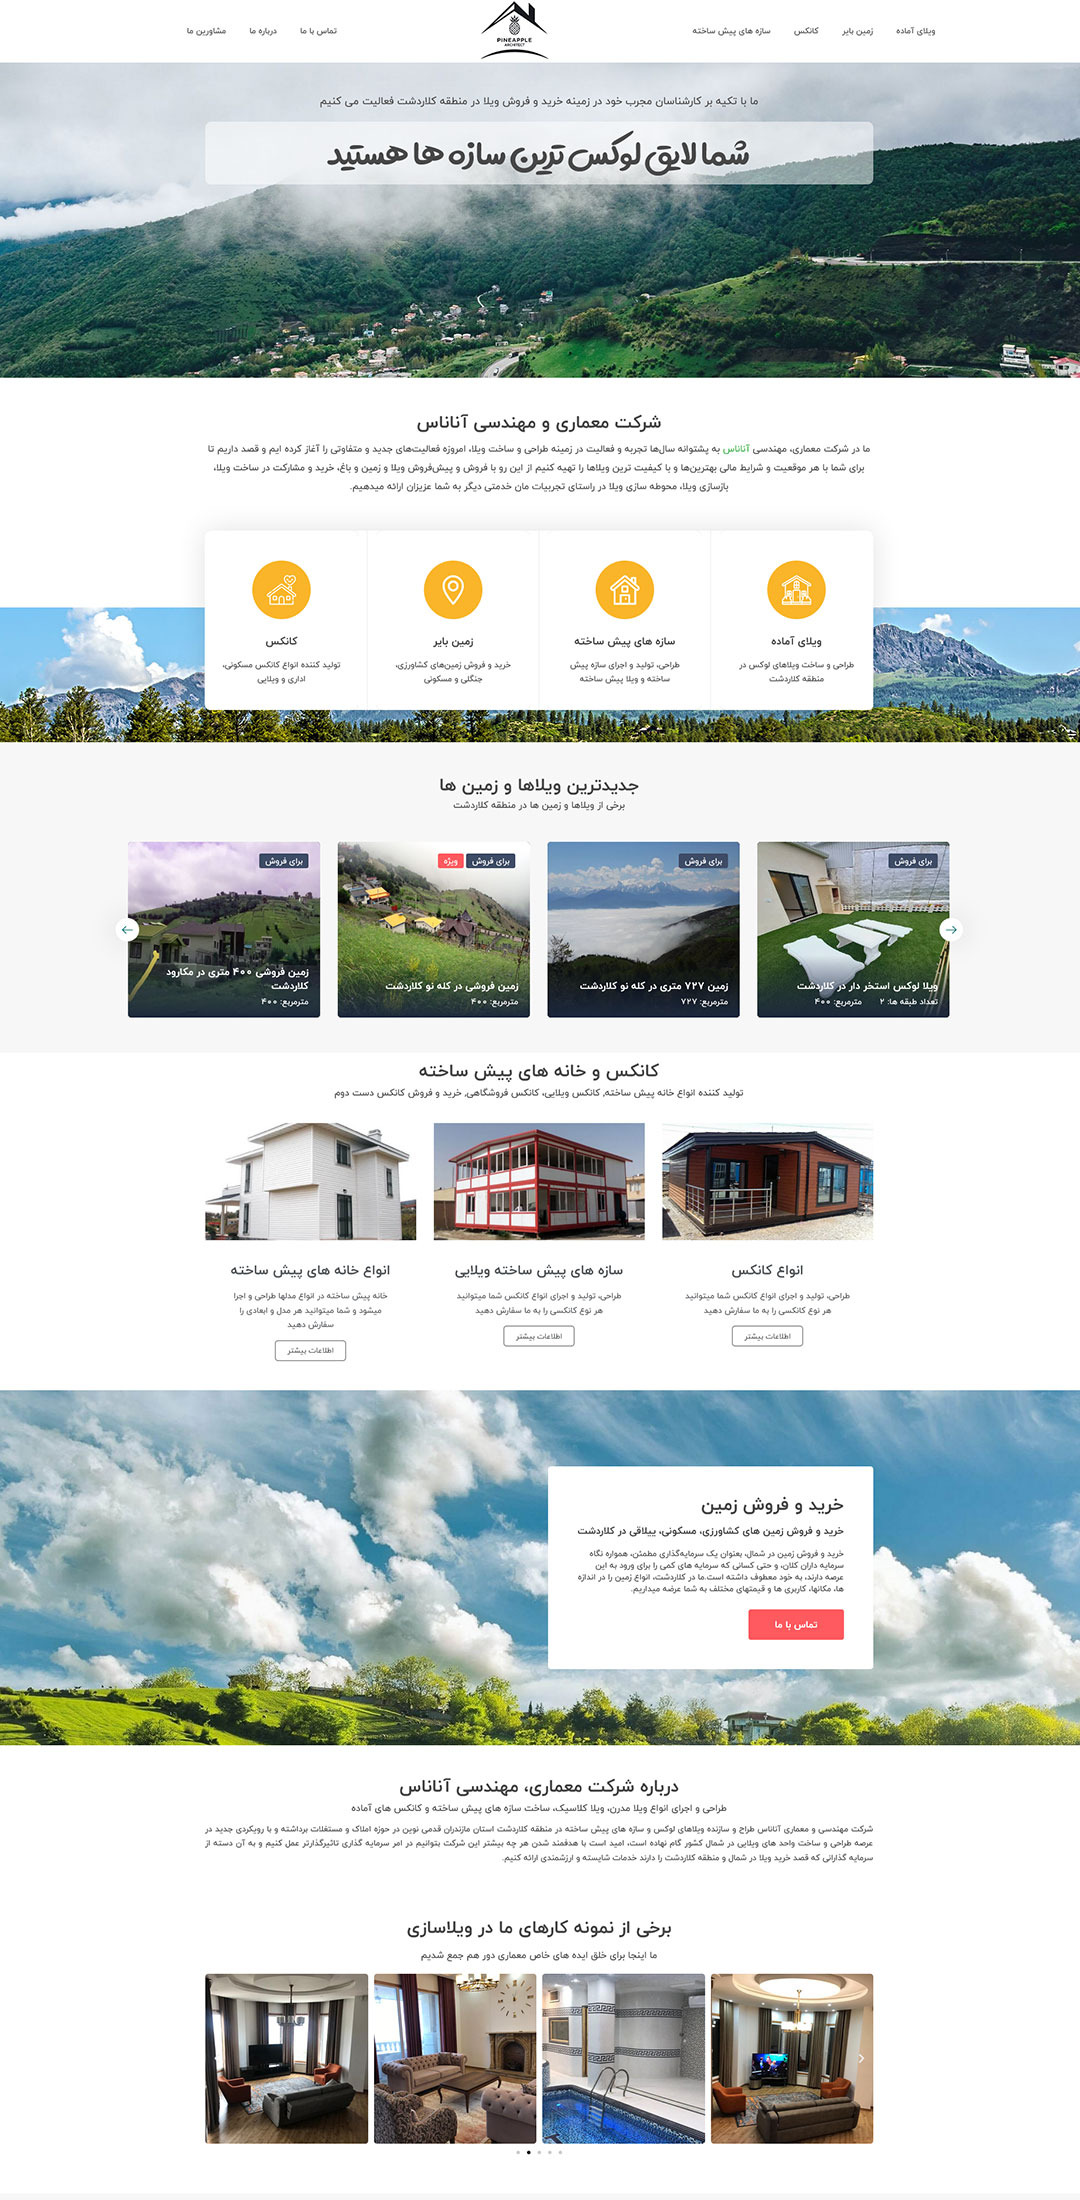 طراحی سایت شرکتی و املاکی معماری و مهندسی آناناس